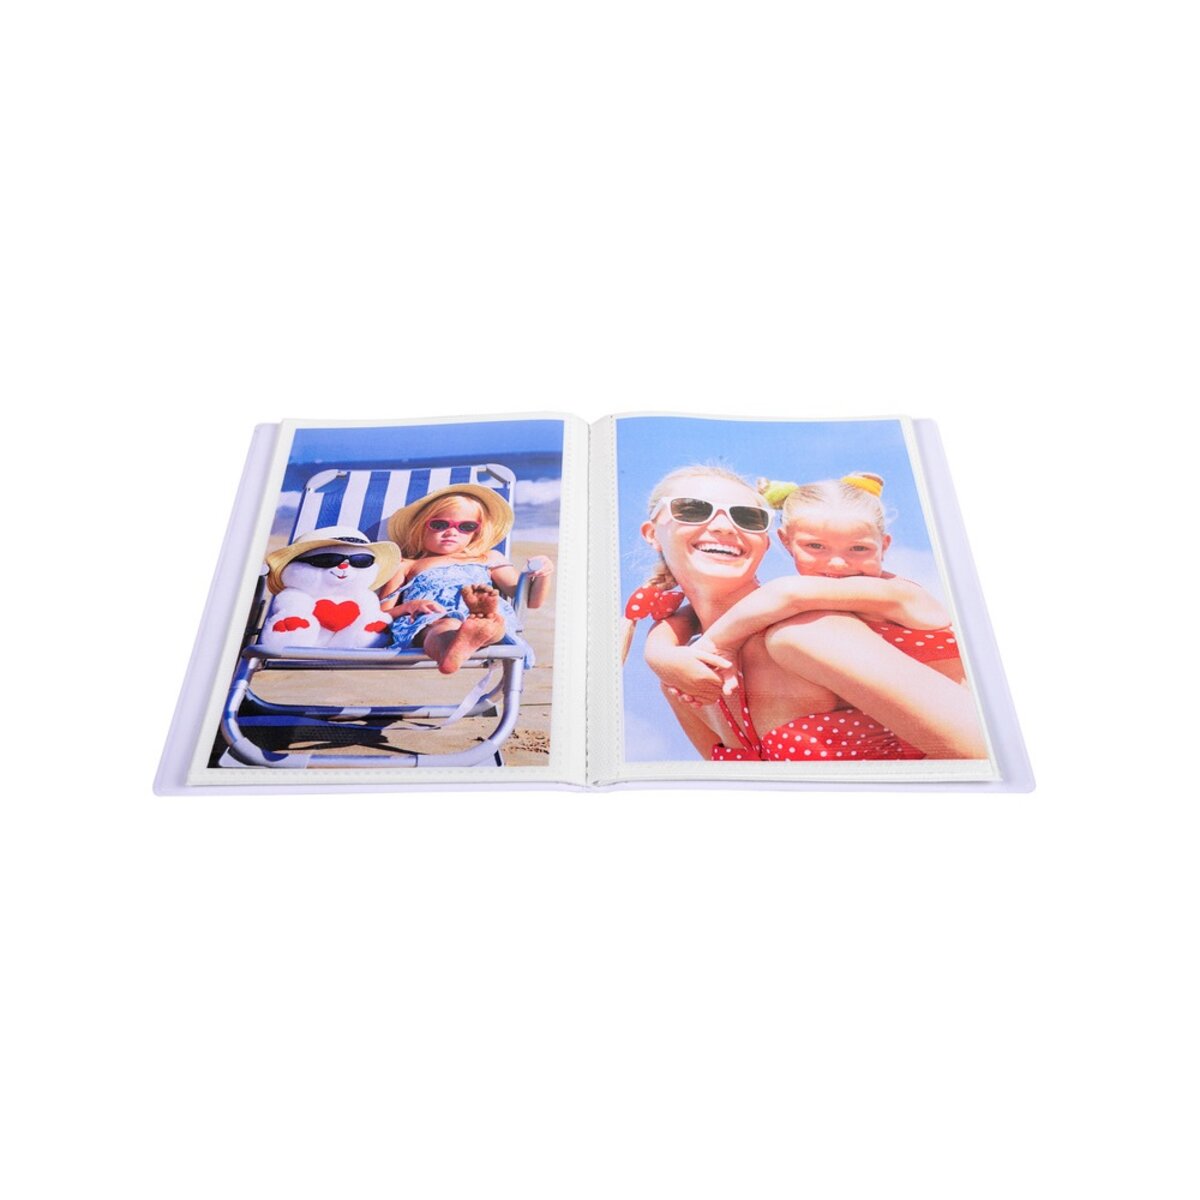 Album photos souple 32 pochettes - 11 x 15 cm